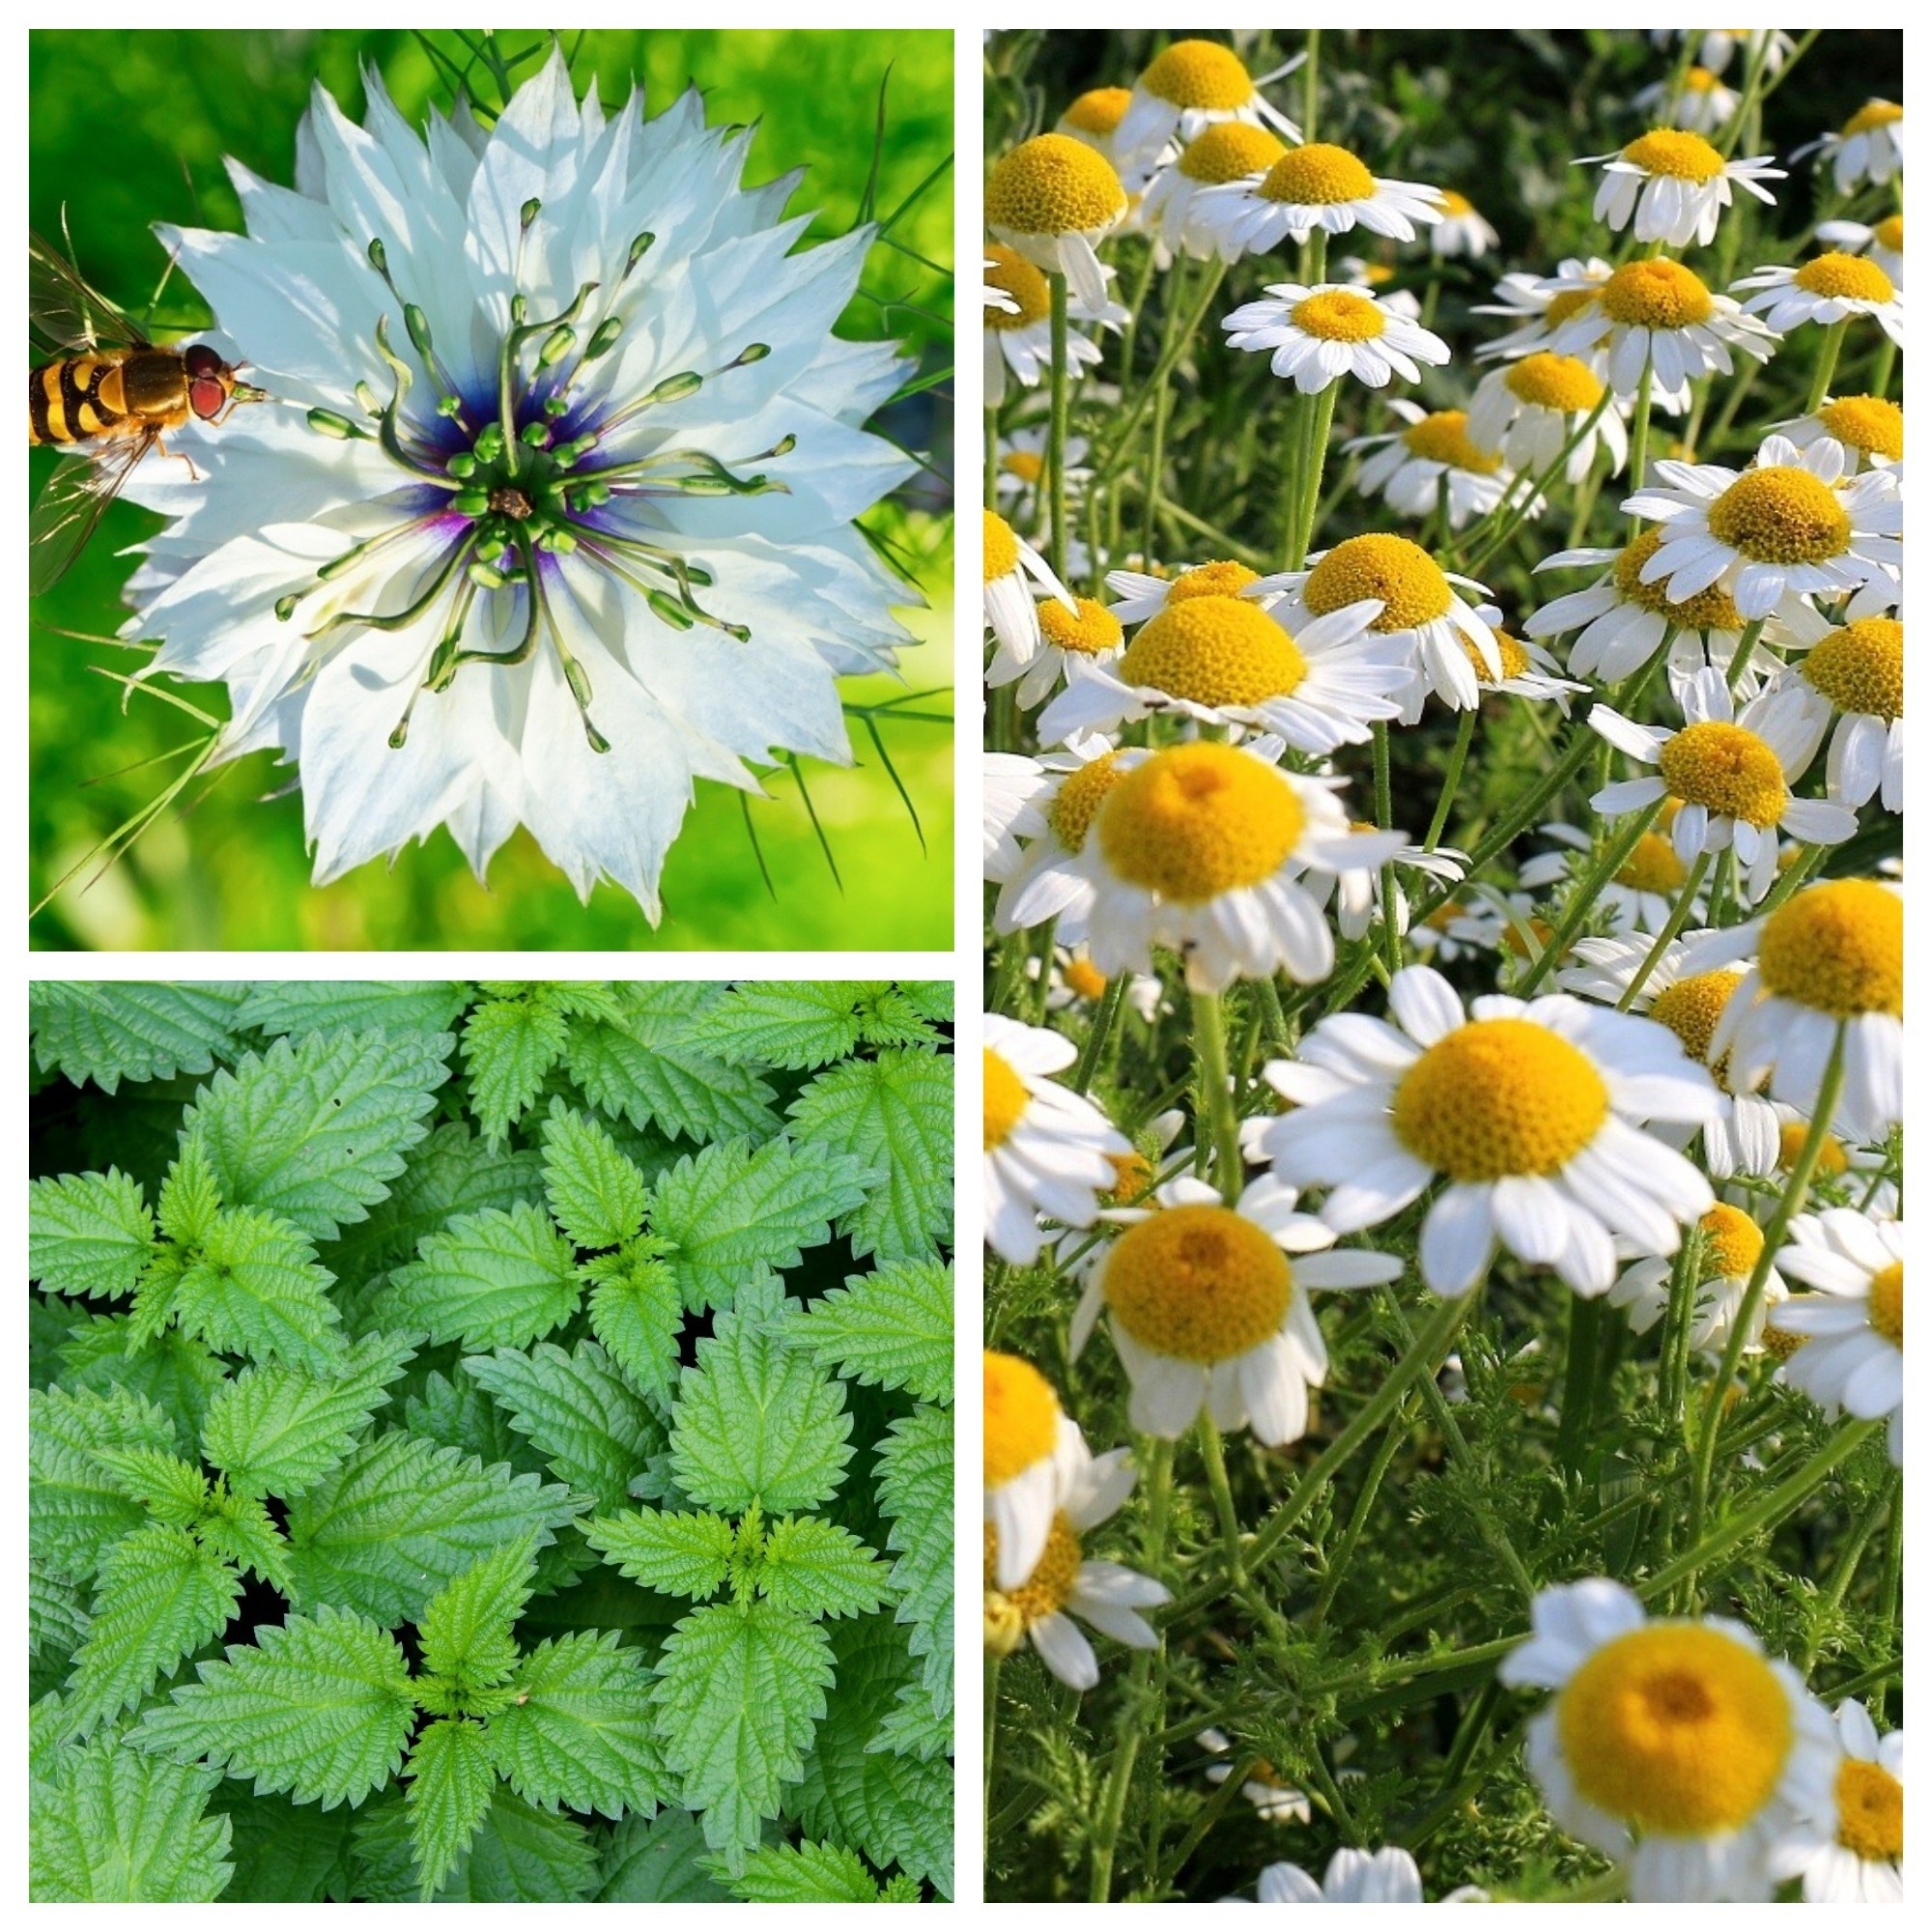 Rastliny upokojujúce alergické reakcie - súbor semien 3 druhov rastlín - -  semená – Garden Seeds Market | Doprava zdarma